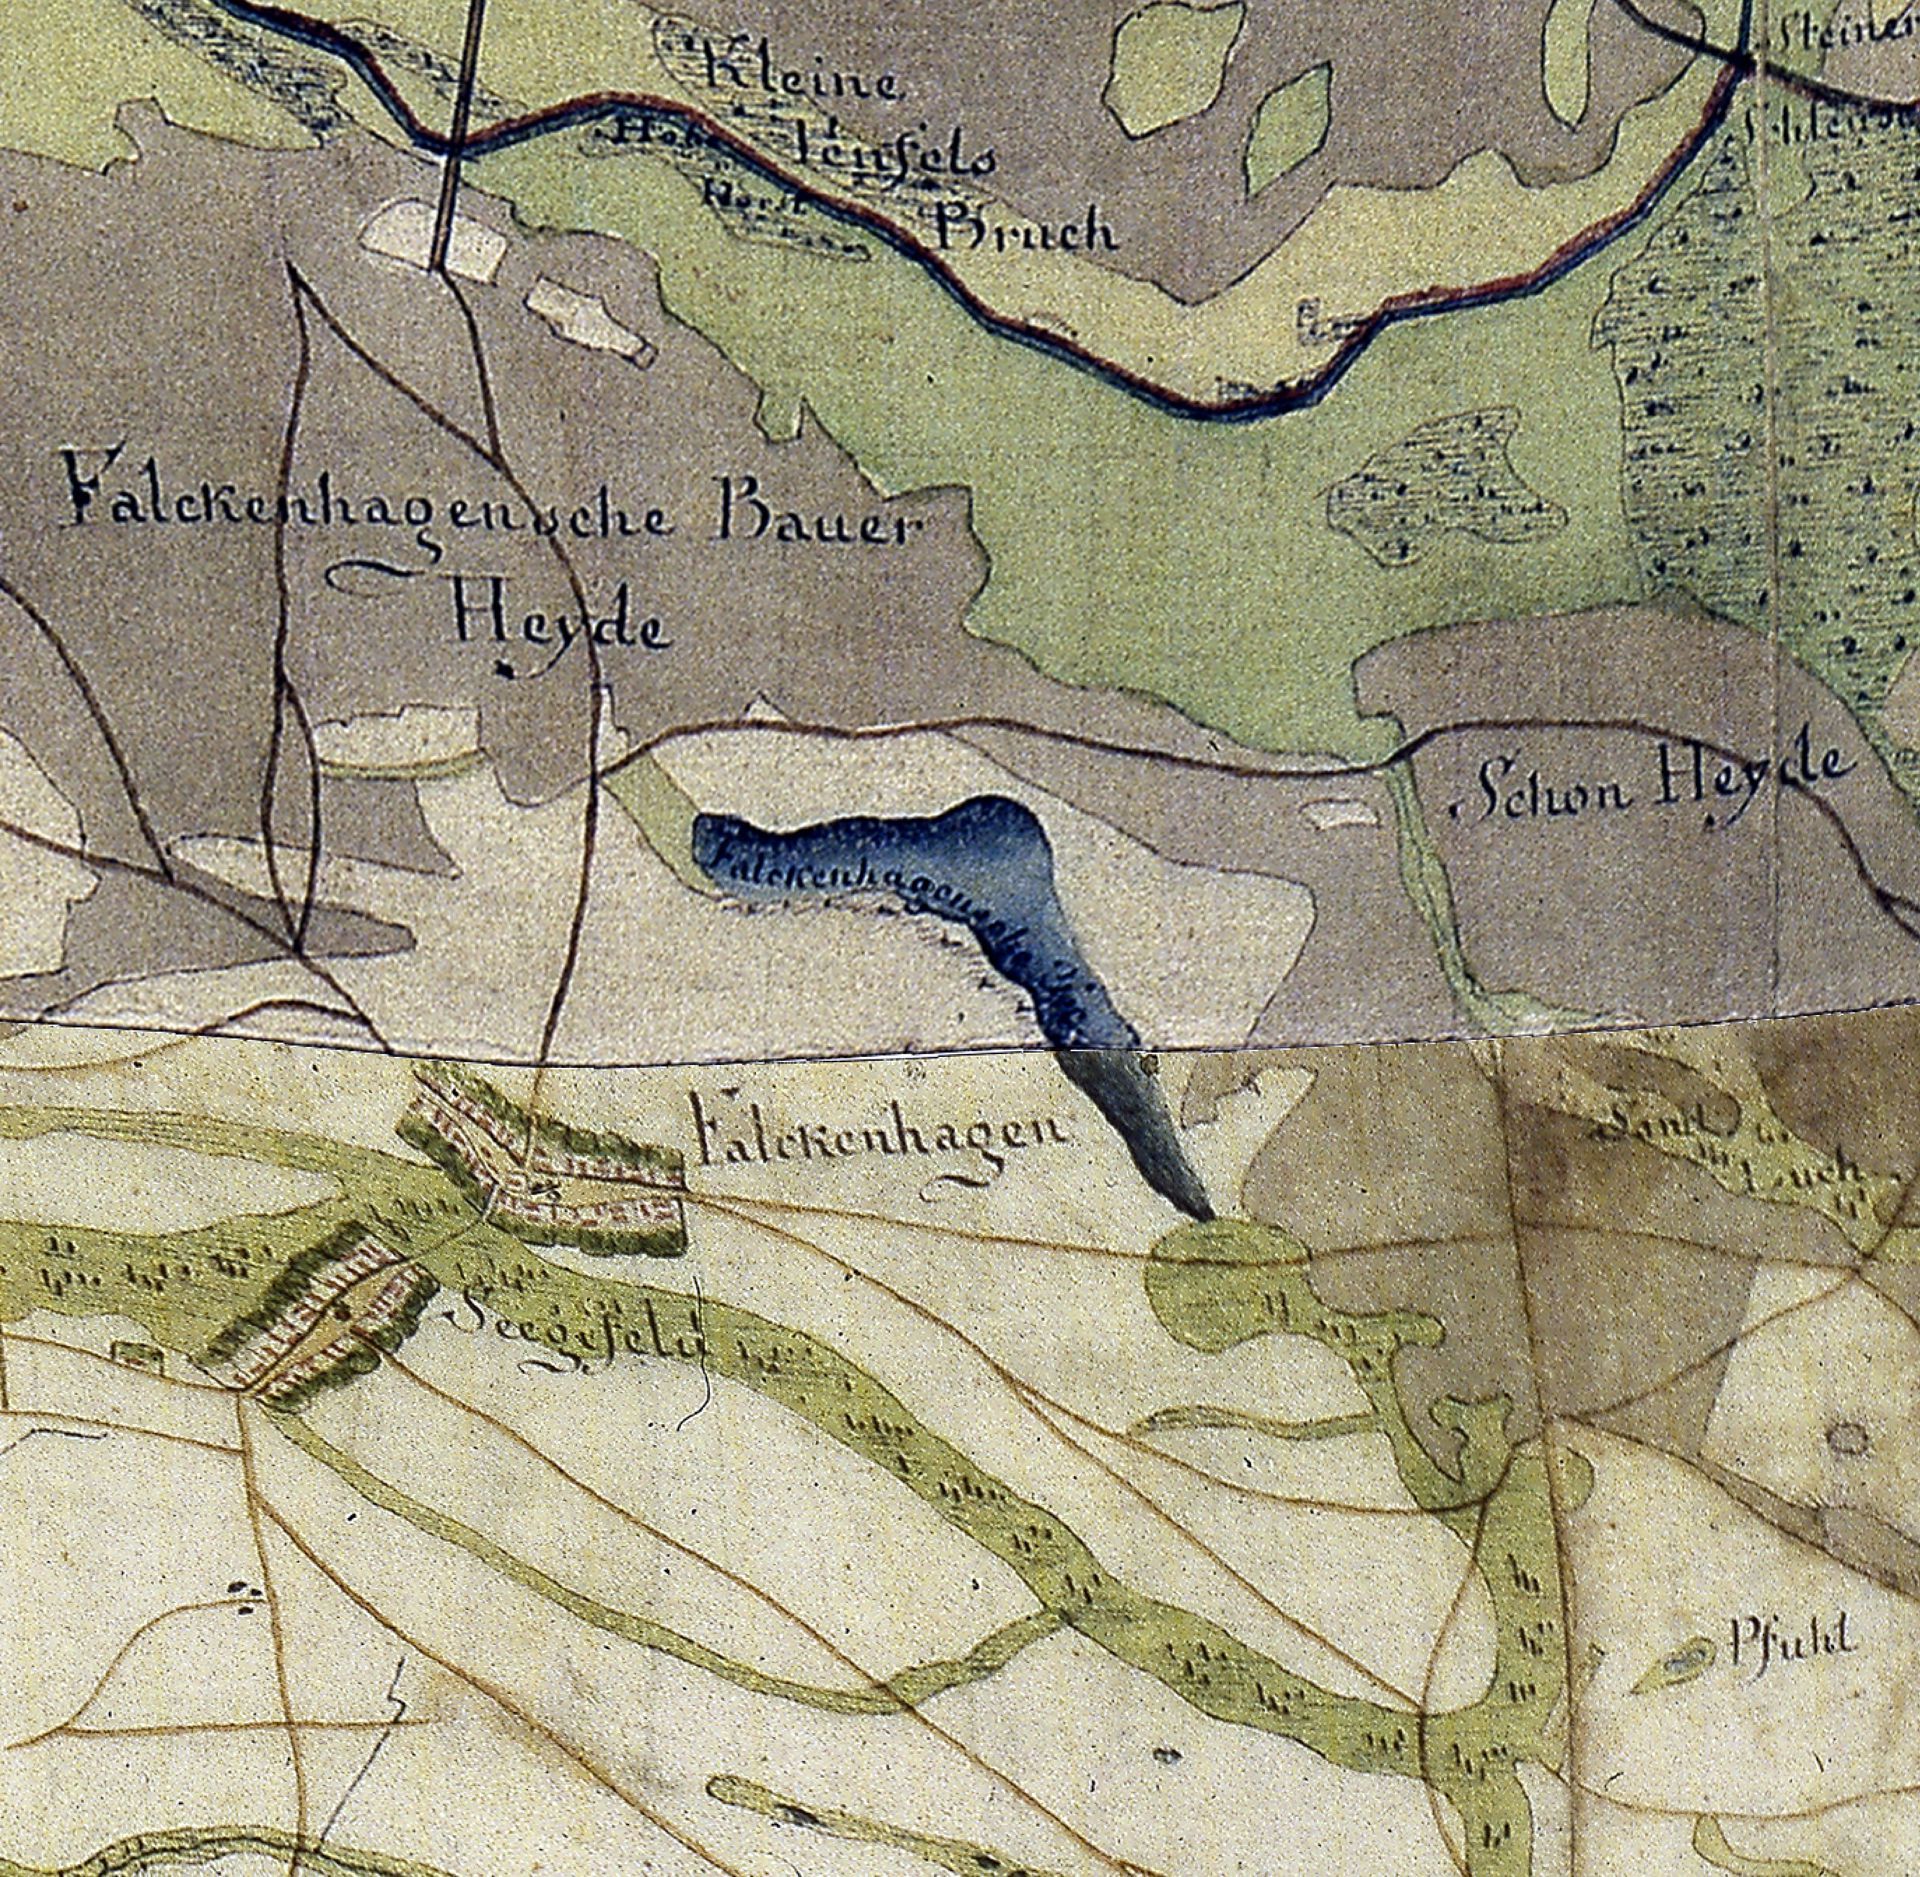 Historical plan of the Falkenhagener See